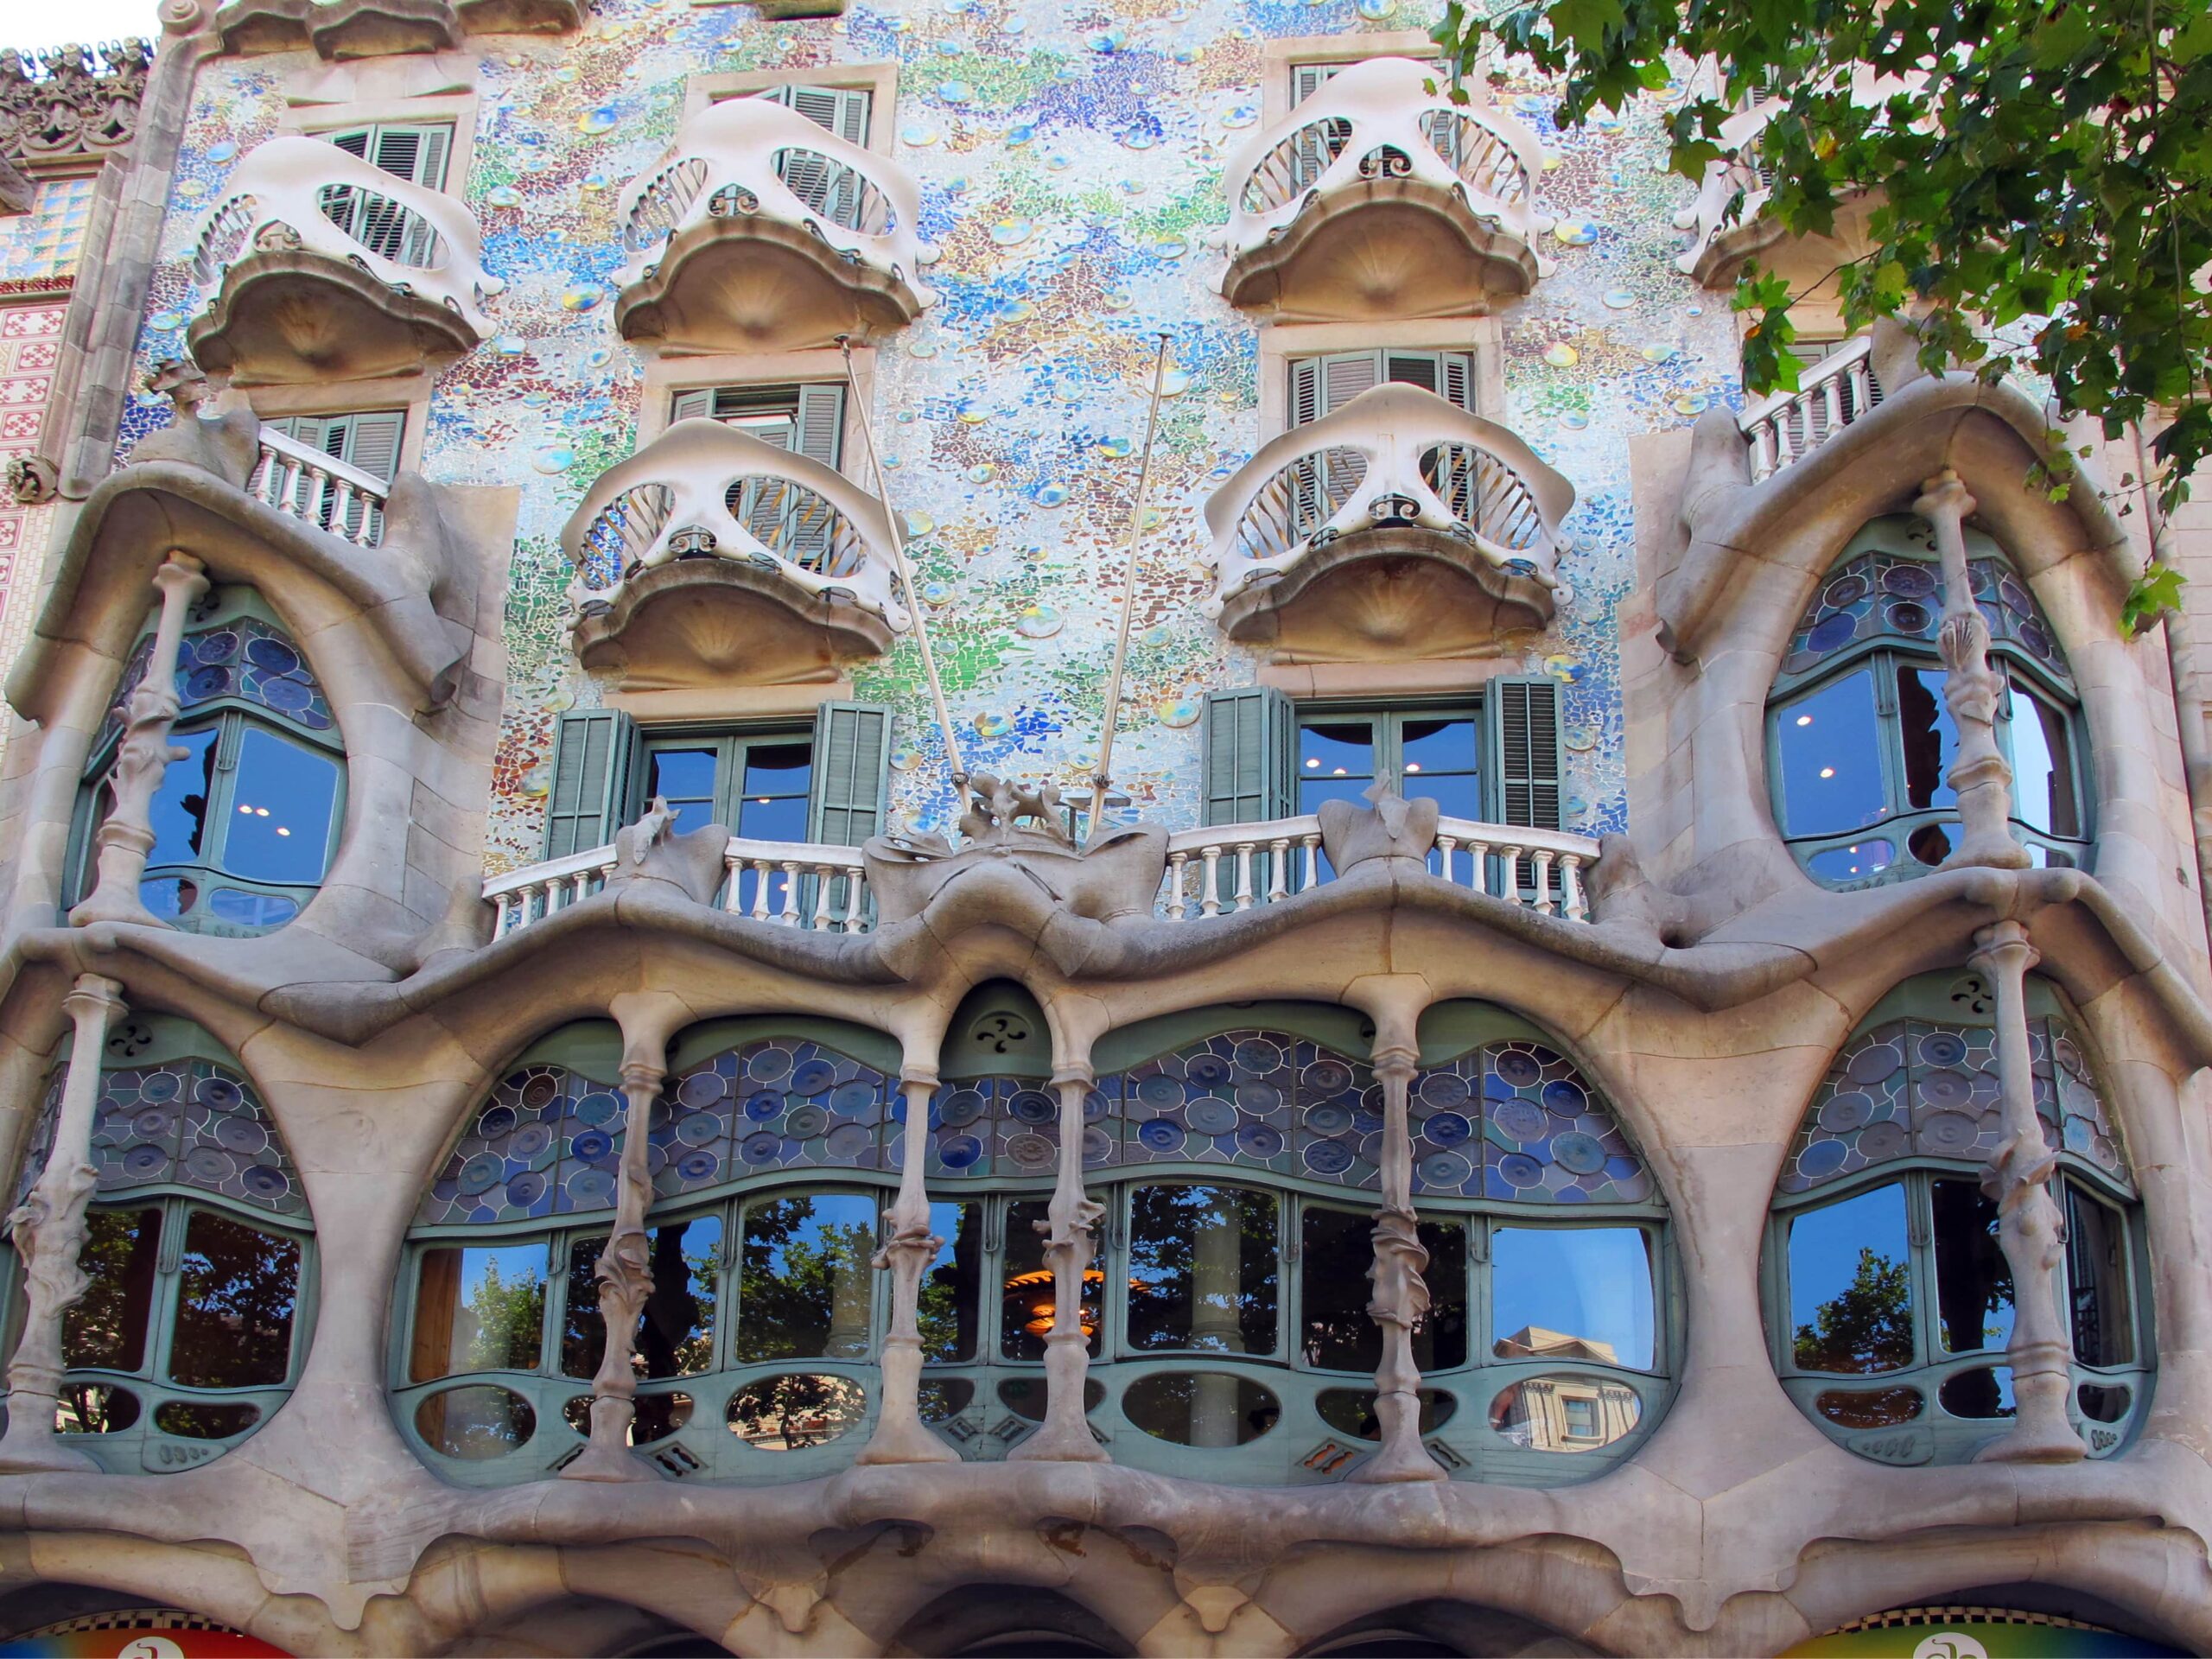 External photo of Gaudi's